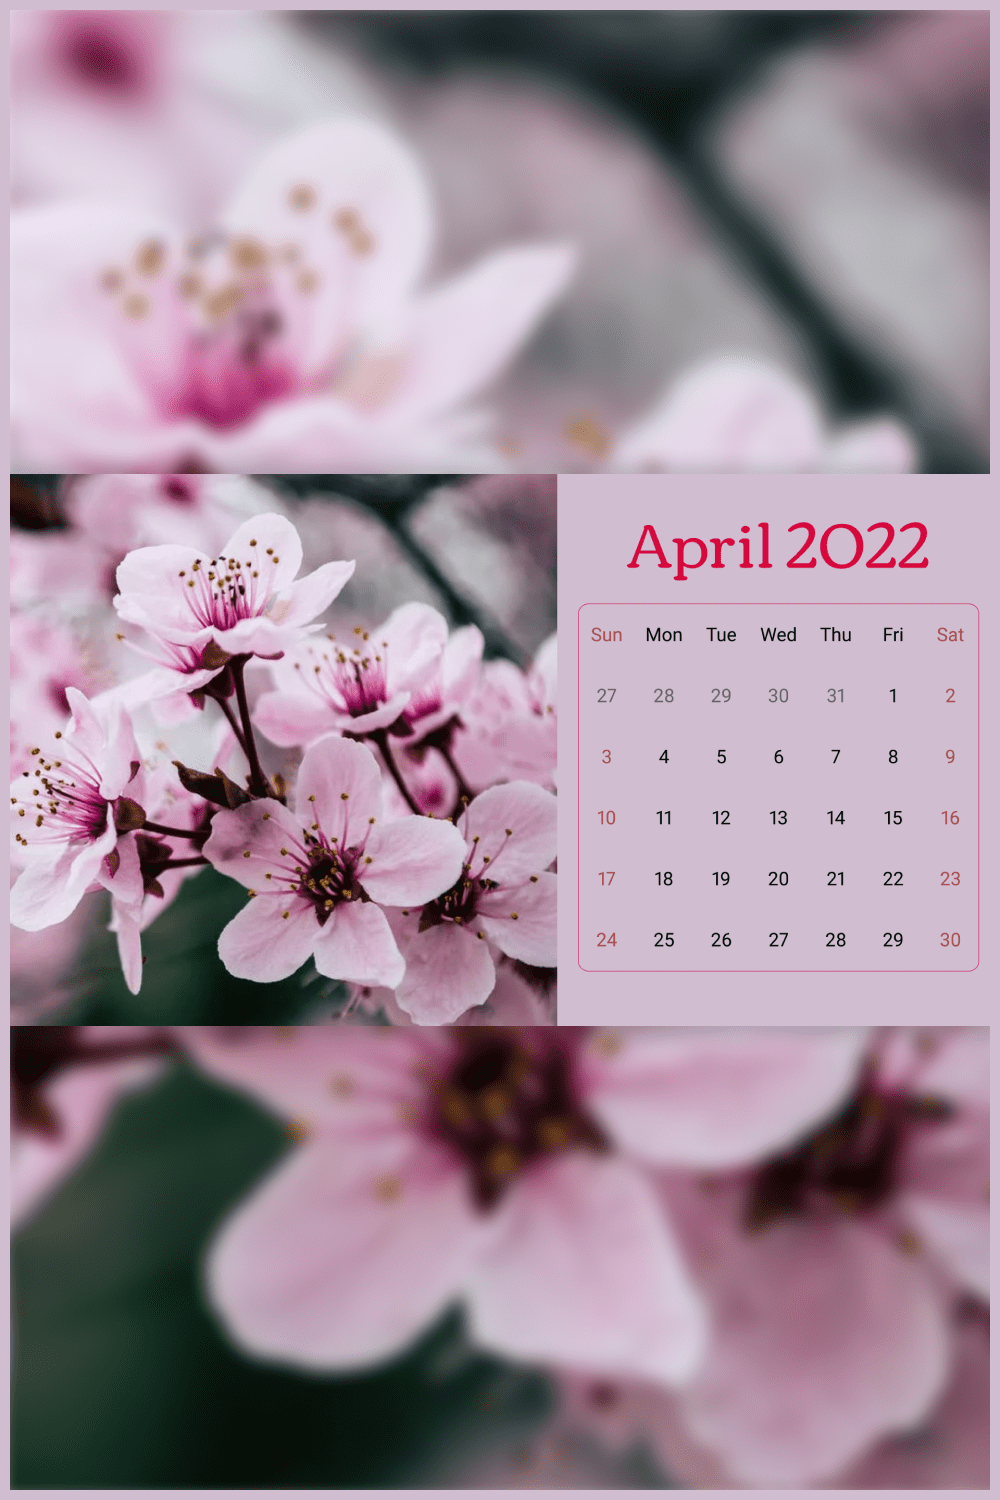 3 04 free printable april calendars 2022 1920x1080 1